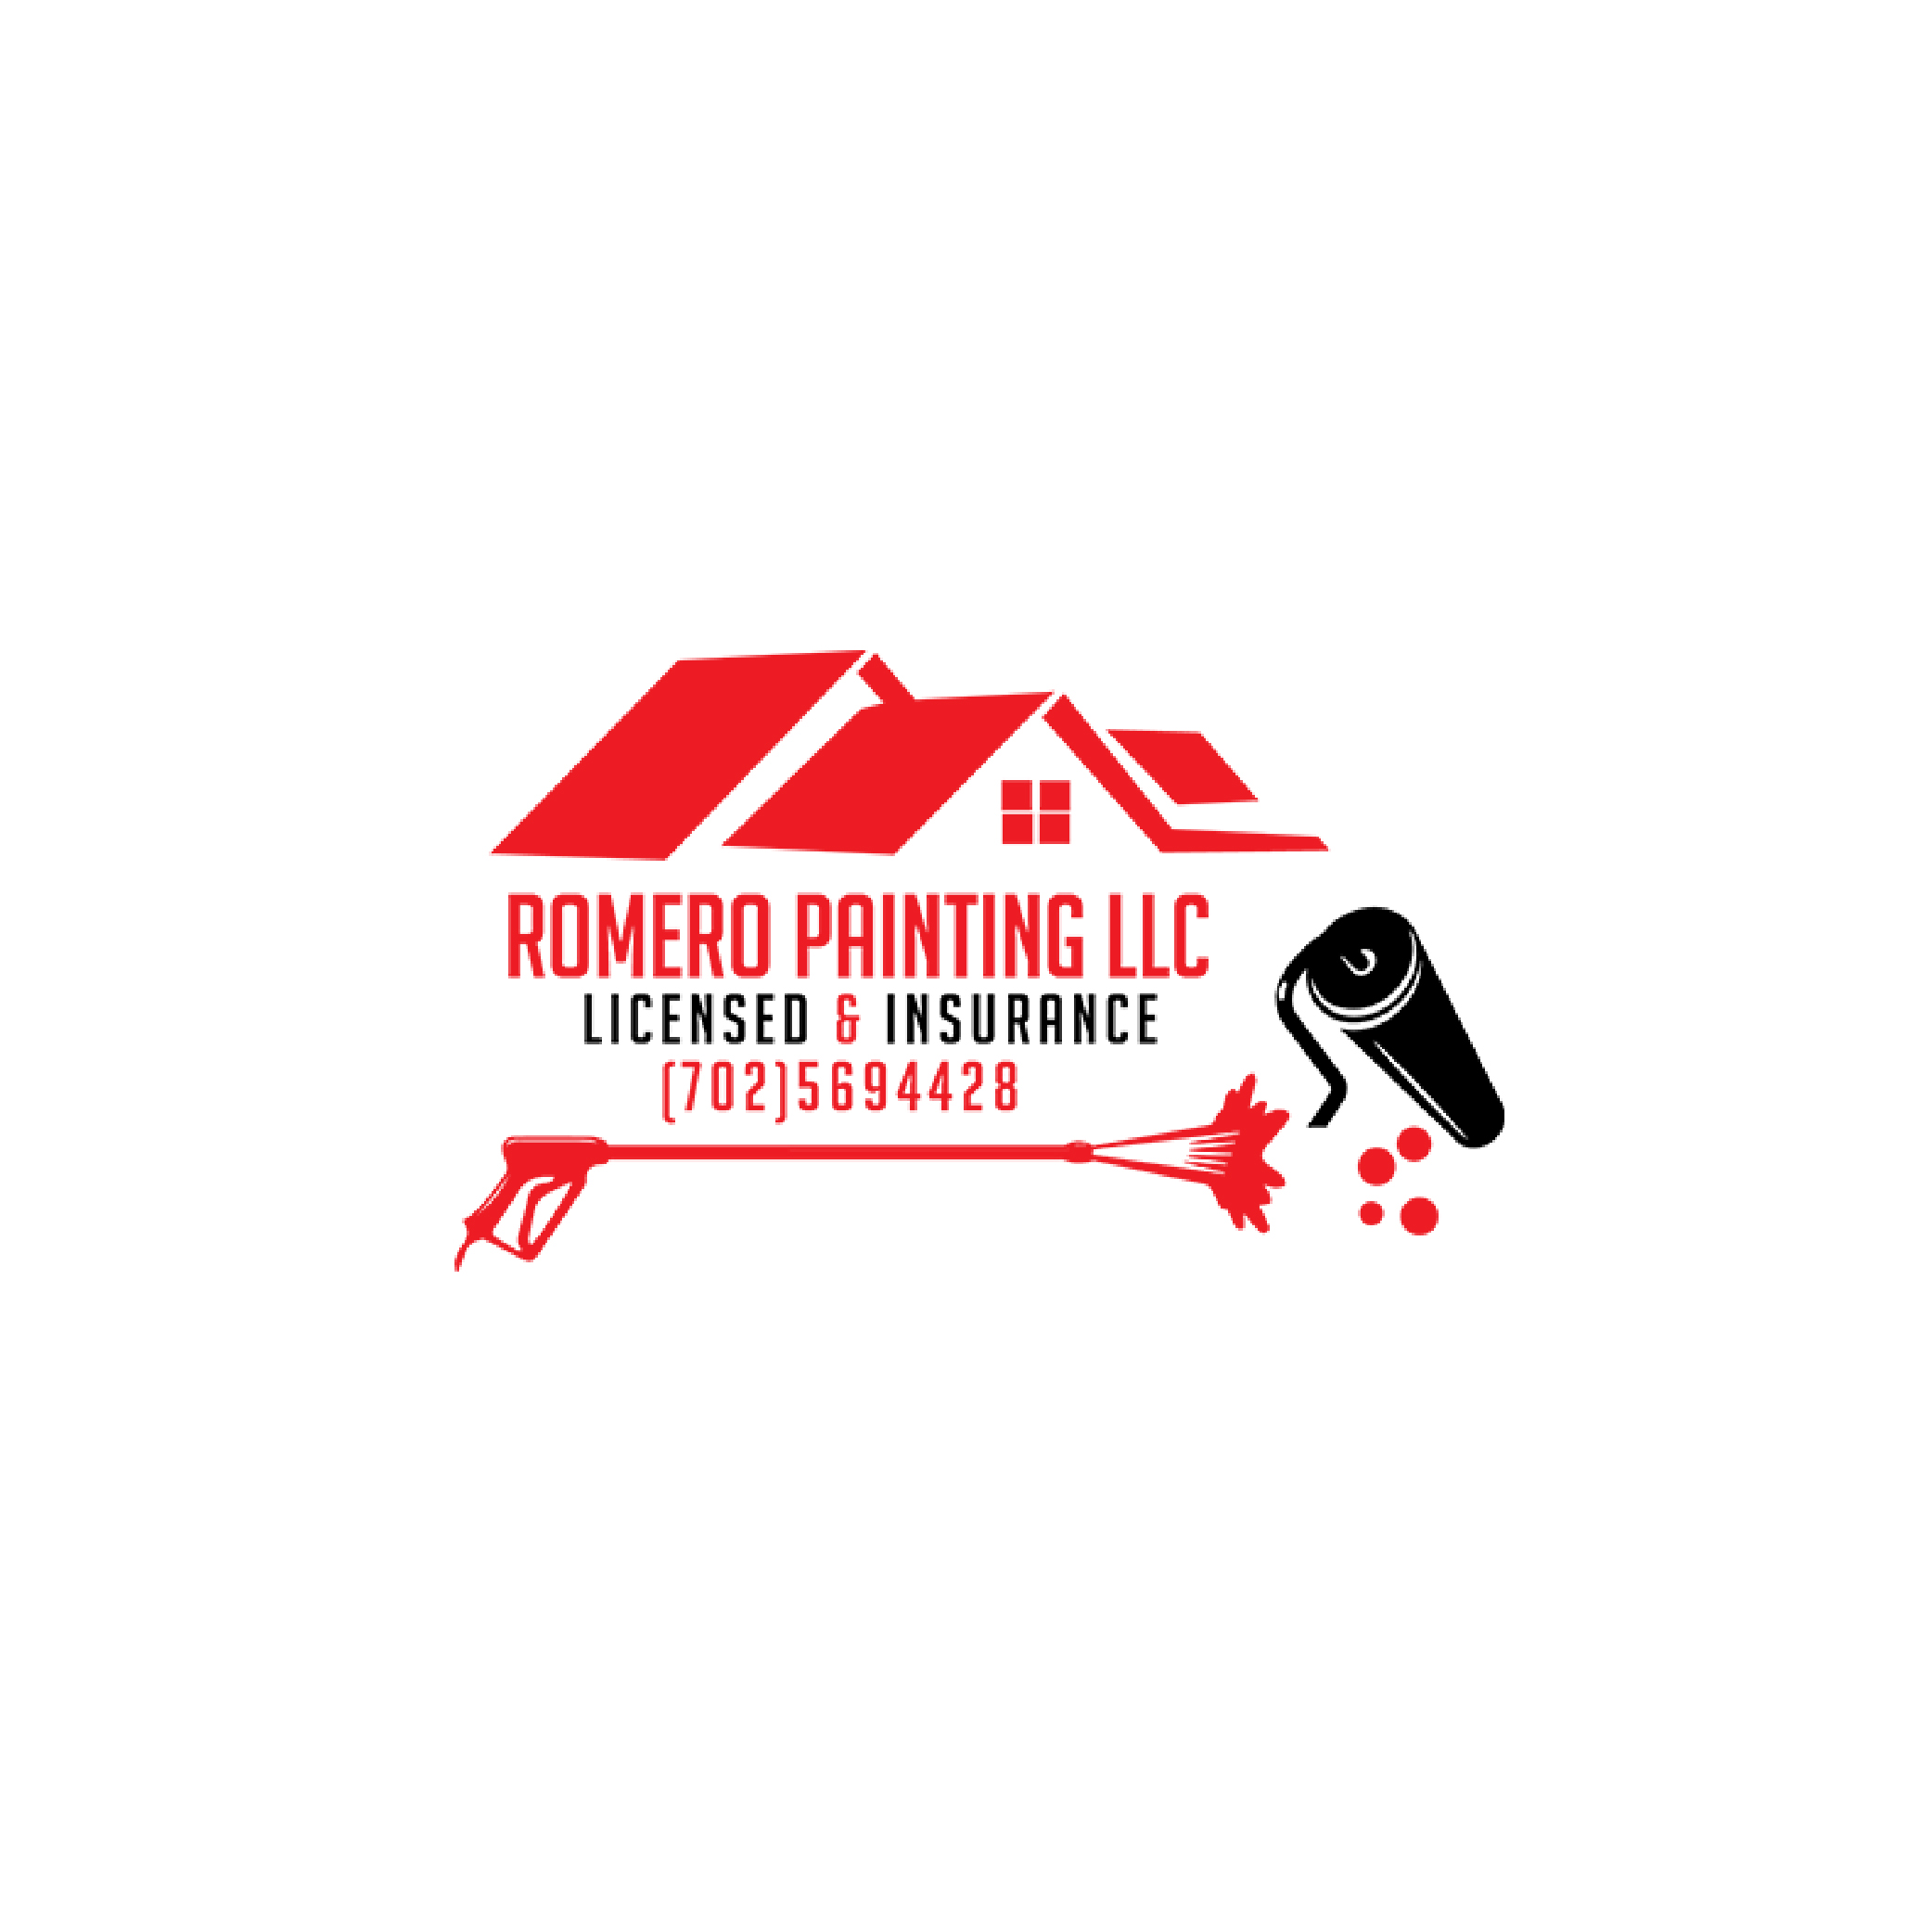 Romero Painting LLC